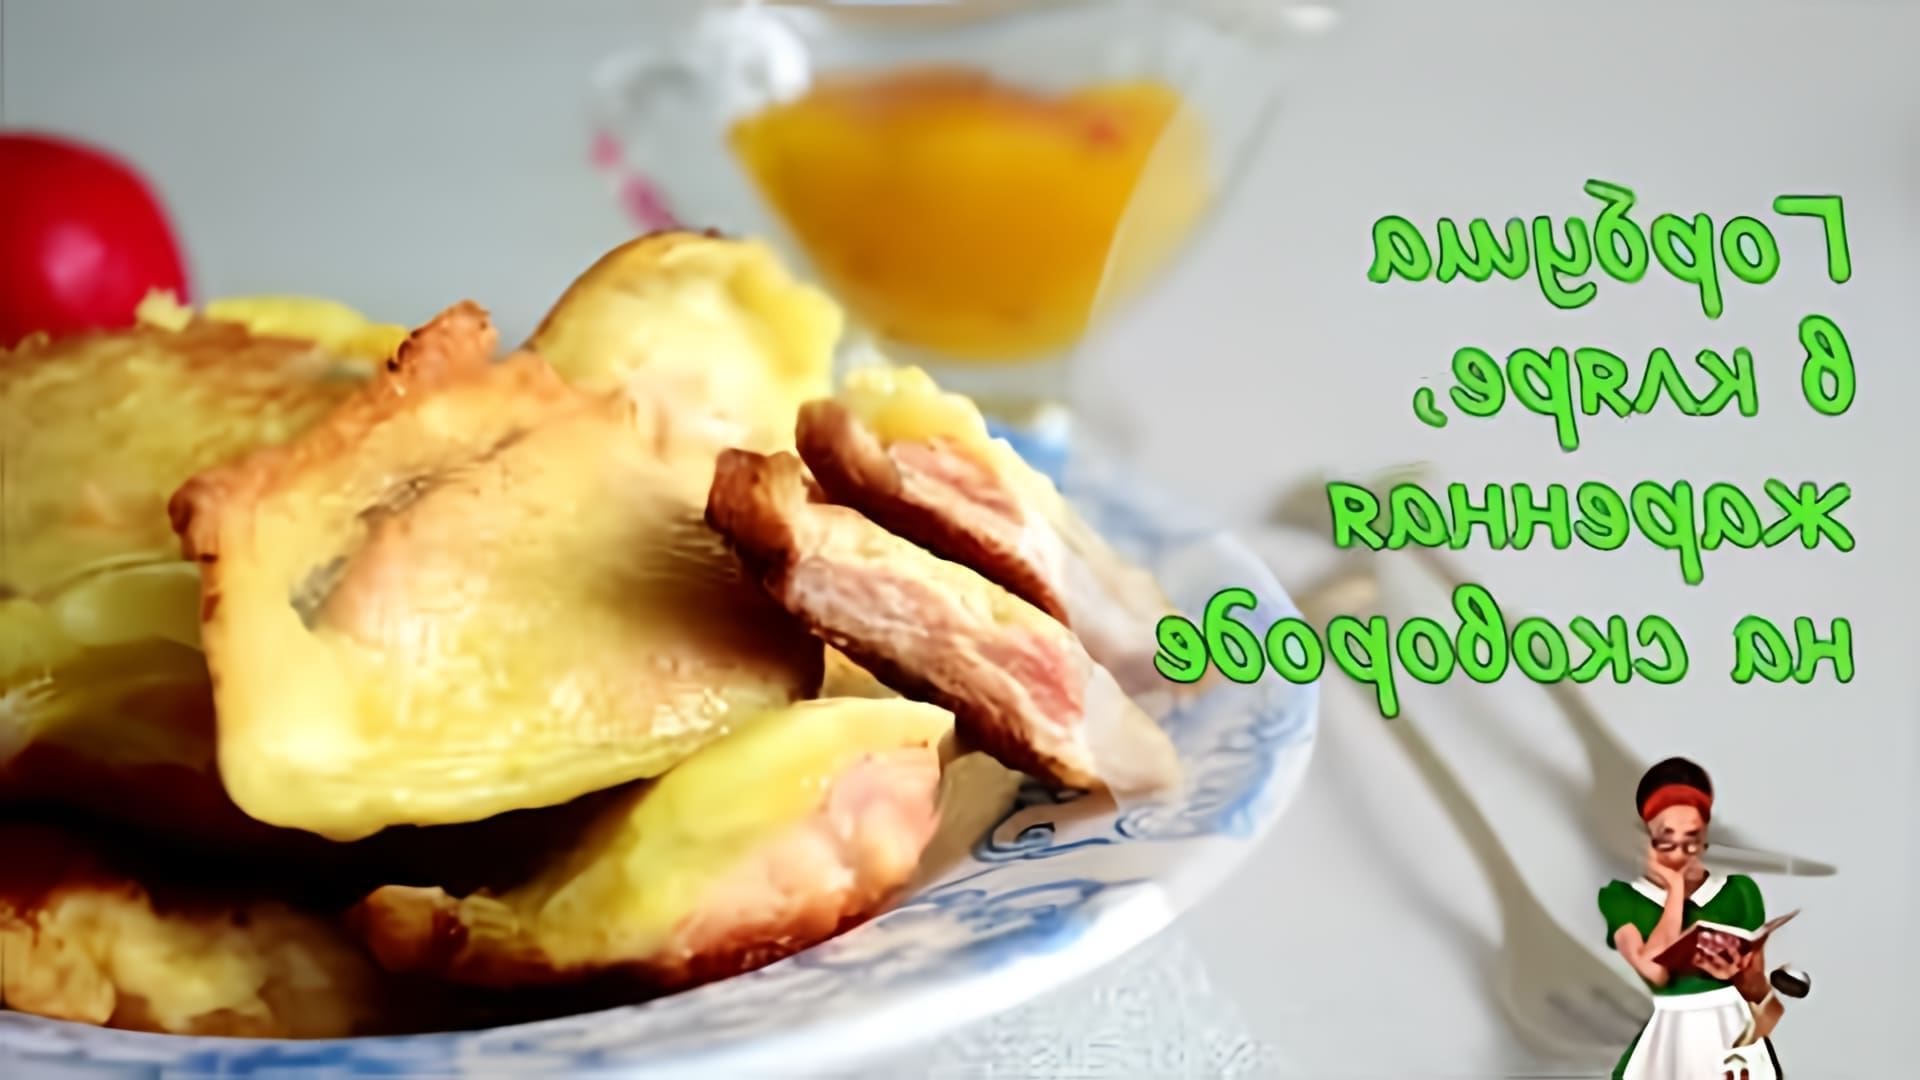 В этом видео демонстрируется простой рецепт приготовления горбуши в кляре на сковороде